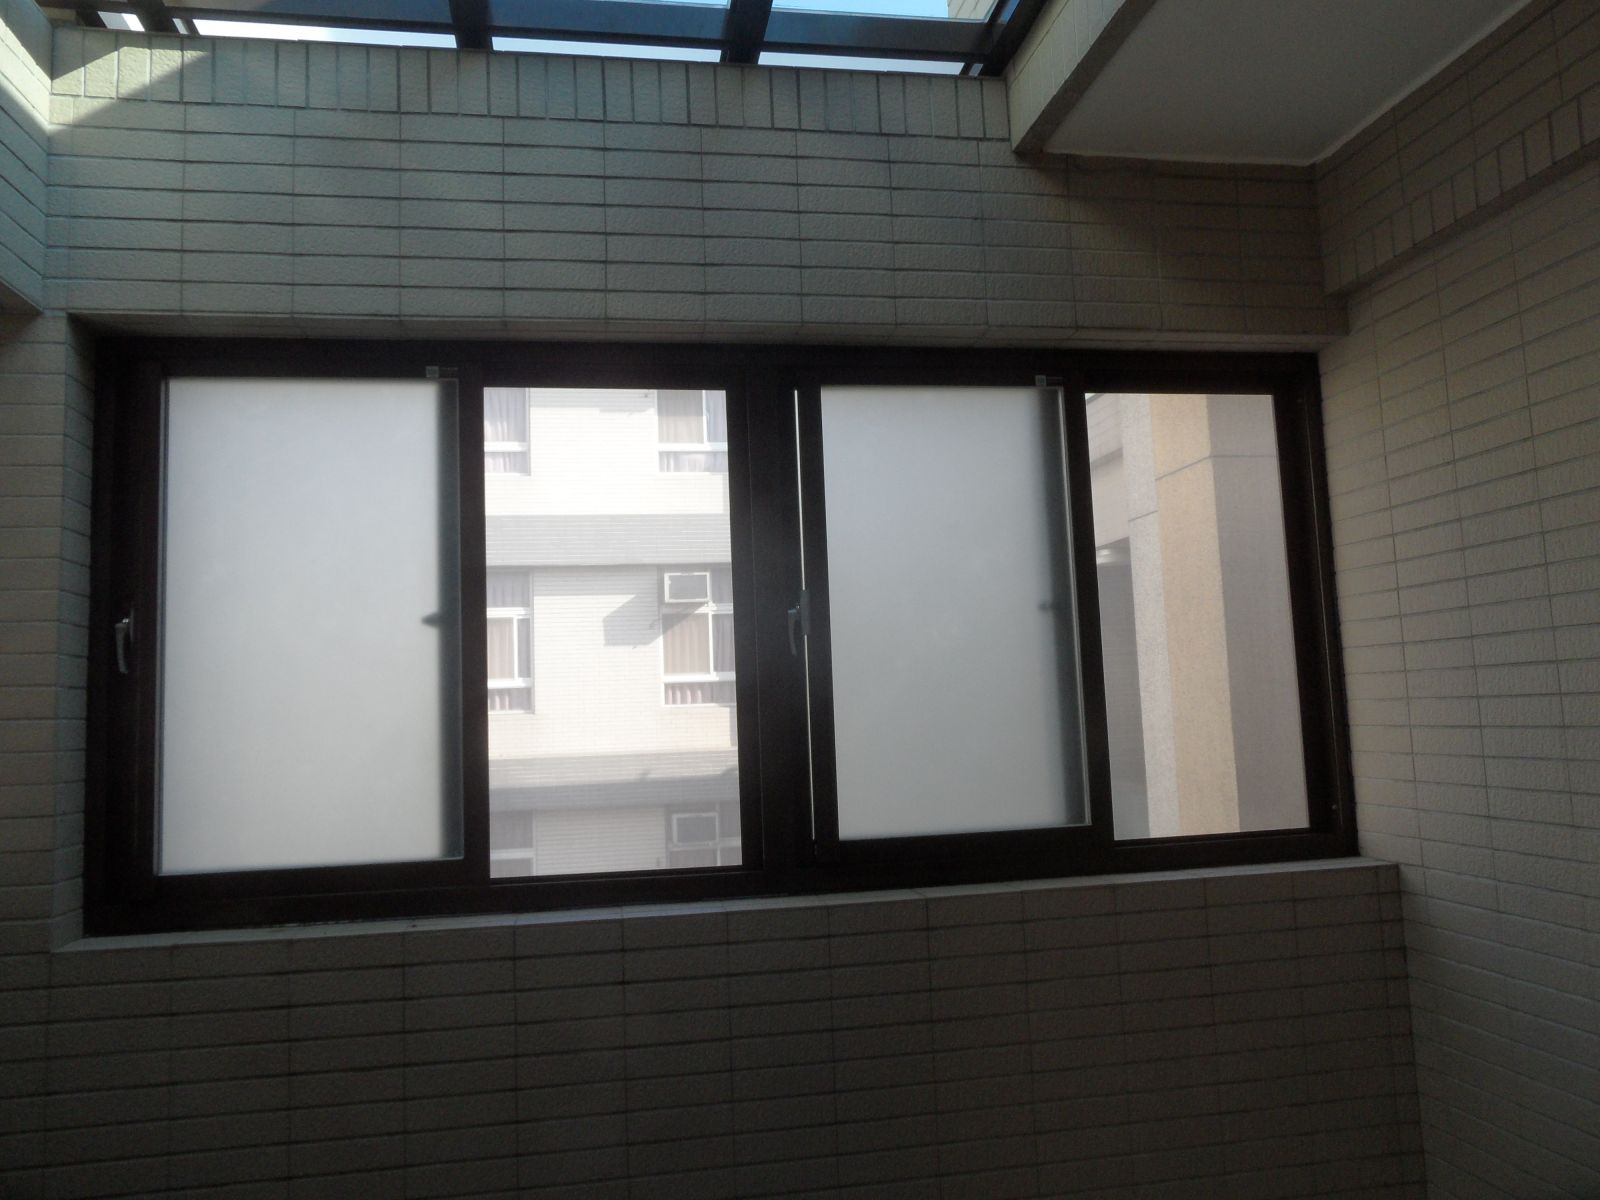 右側採用2組活動百葉(含紗窗)一組固定窗(5mm噴砂強化玻璃)